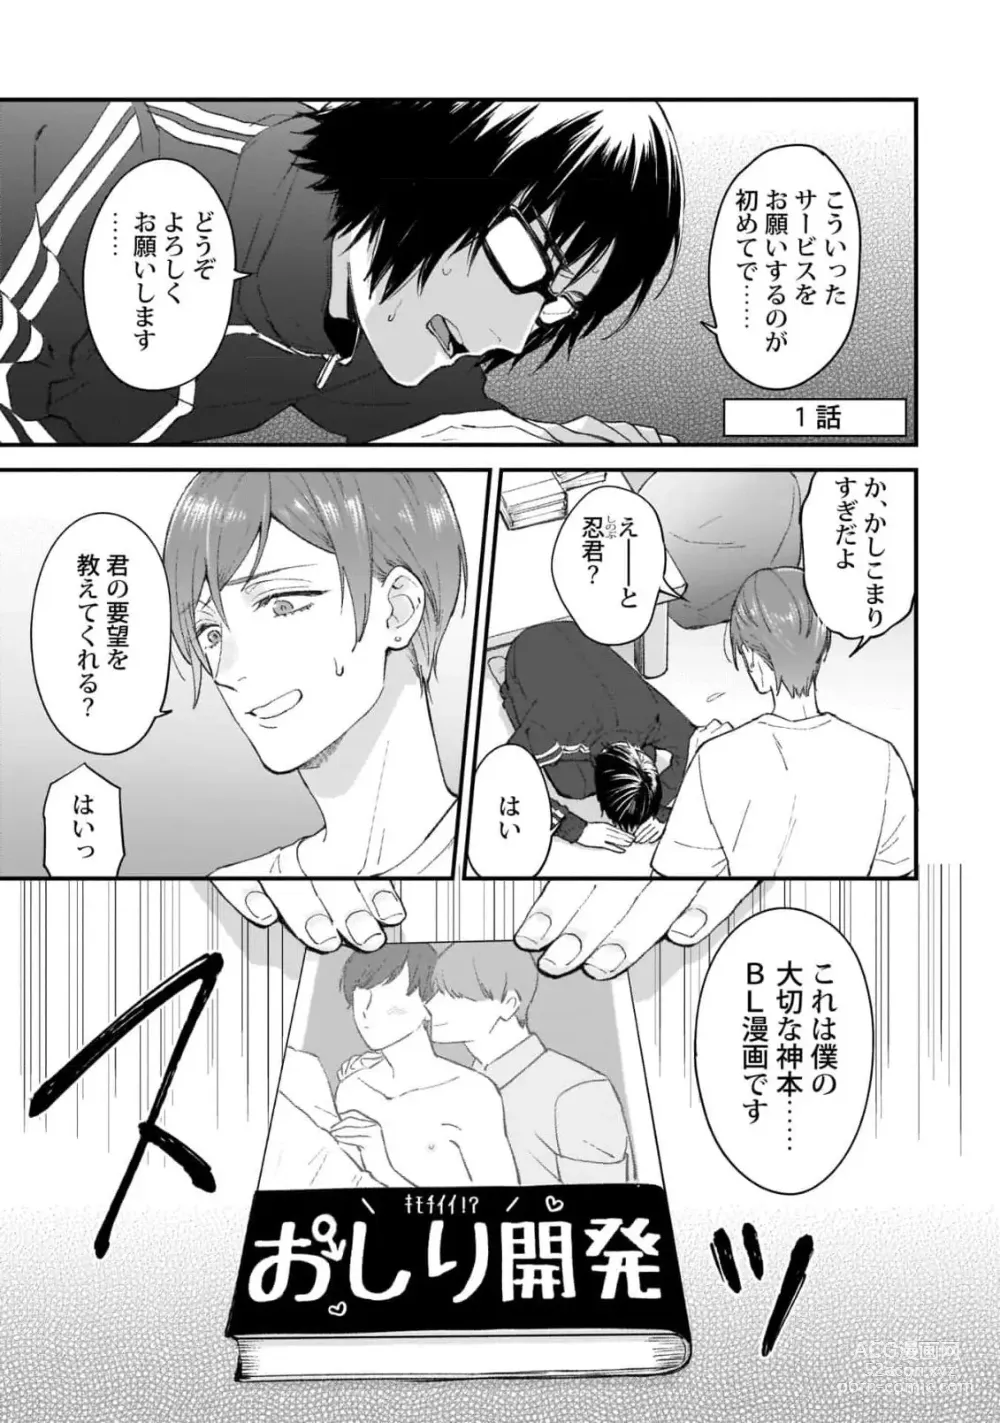 Page 5 of manga Fudanshi-kun wa Tameshitai